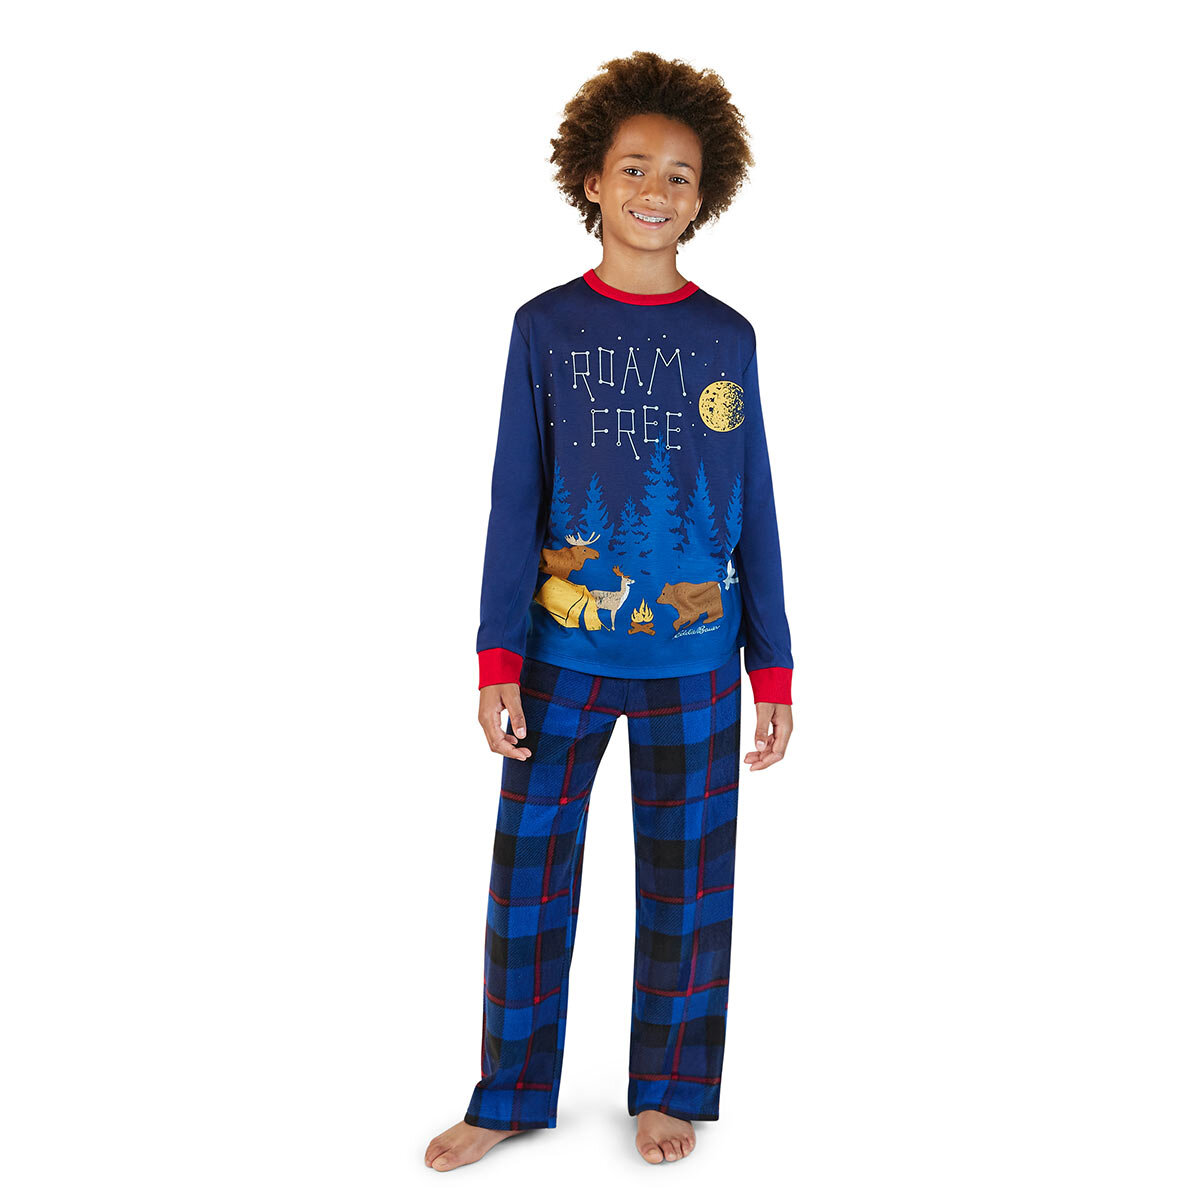 Eddie Bauer Children's 4 Piece Pyjama Set in Navy Roam